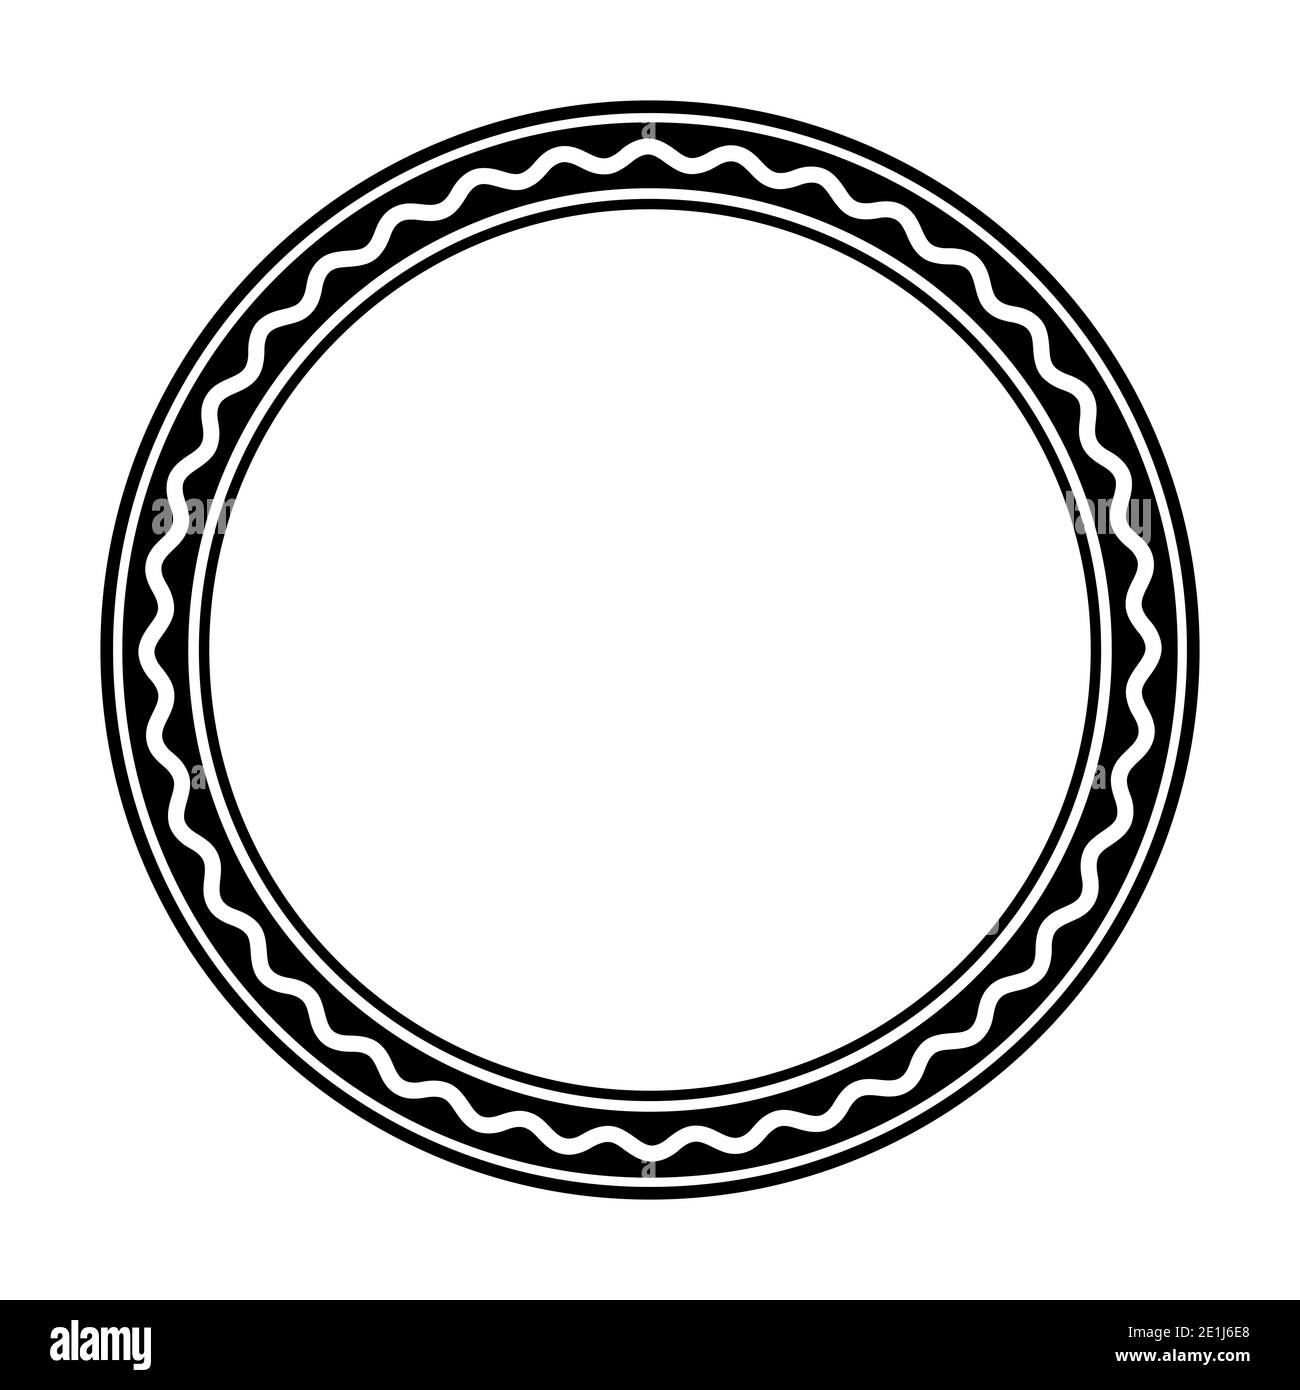 Cornice circolare nera, con una linea ondulata bianca in grassetto. Cornice circolare composta da tre cerchi e da una linea a serpentina. Cornice circolare e cornice decorativa. Foto Stock